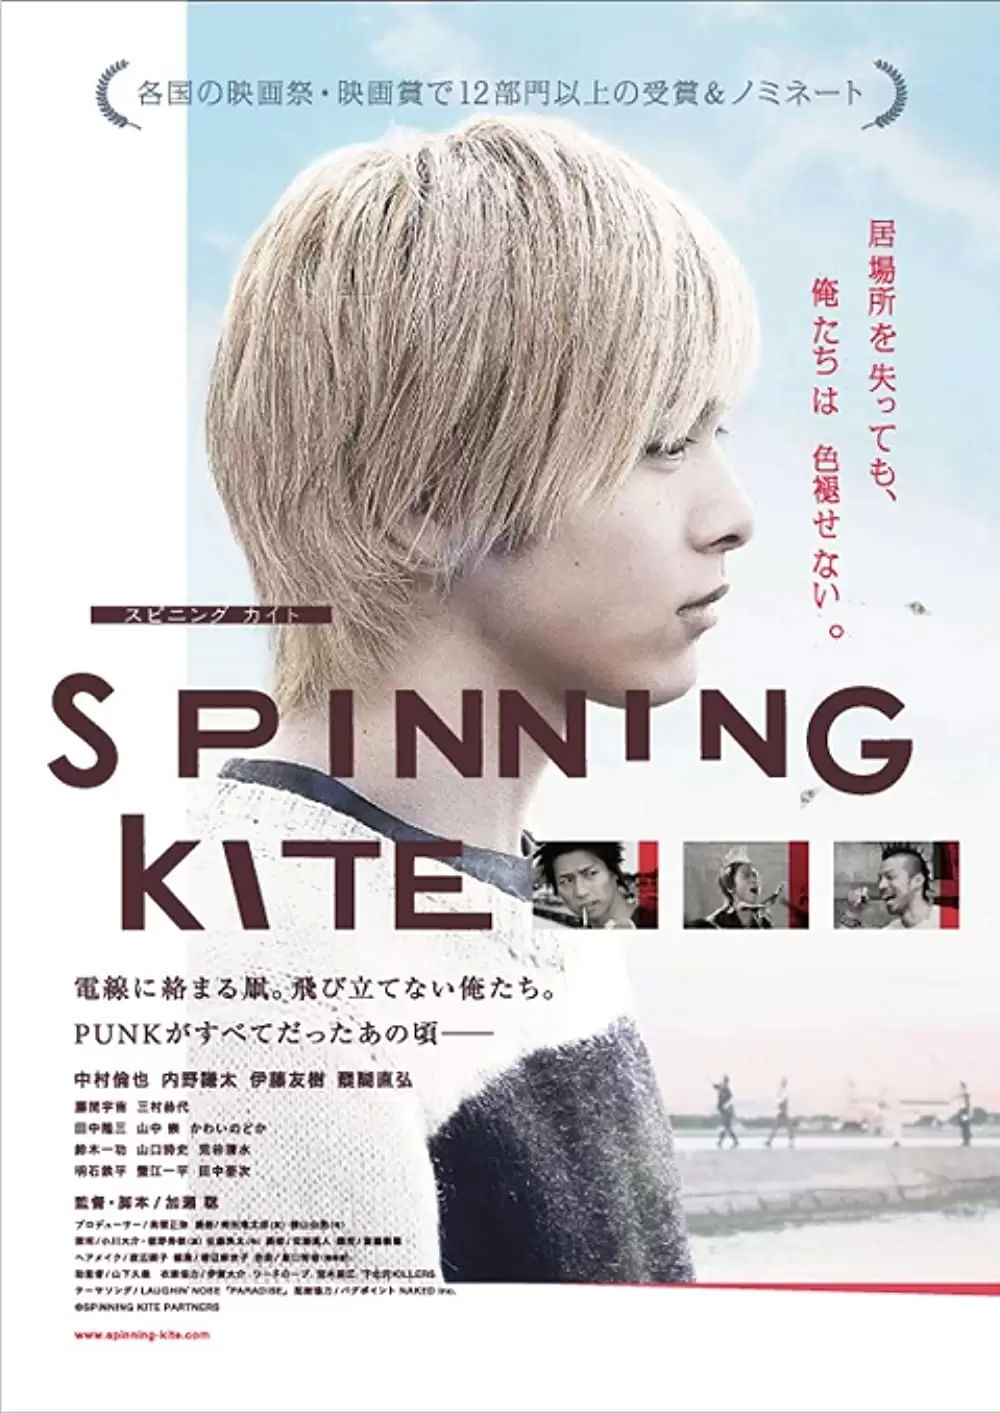 「SPINNING KITE スピニング カイト」の画像